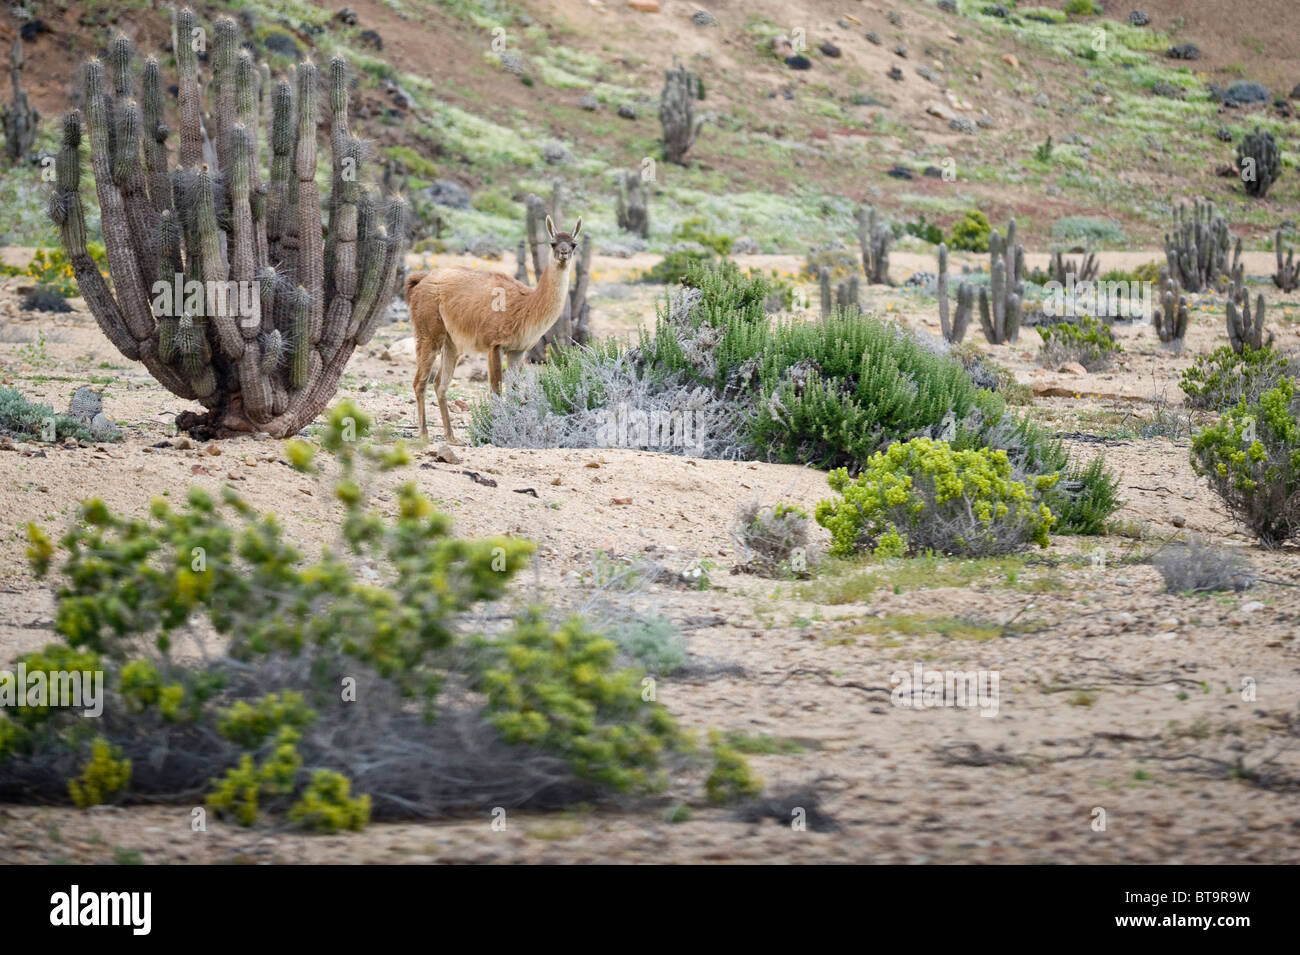 Guanaco (Lama guanicoe) male standing on plant covered slope Quebrada del Castillo Parque National Pan de Azucar Atacama Chile Stock Photo